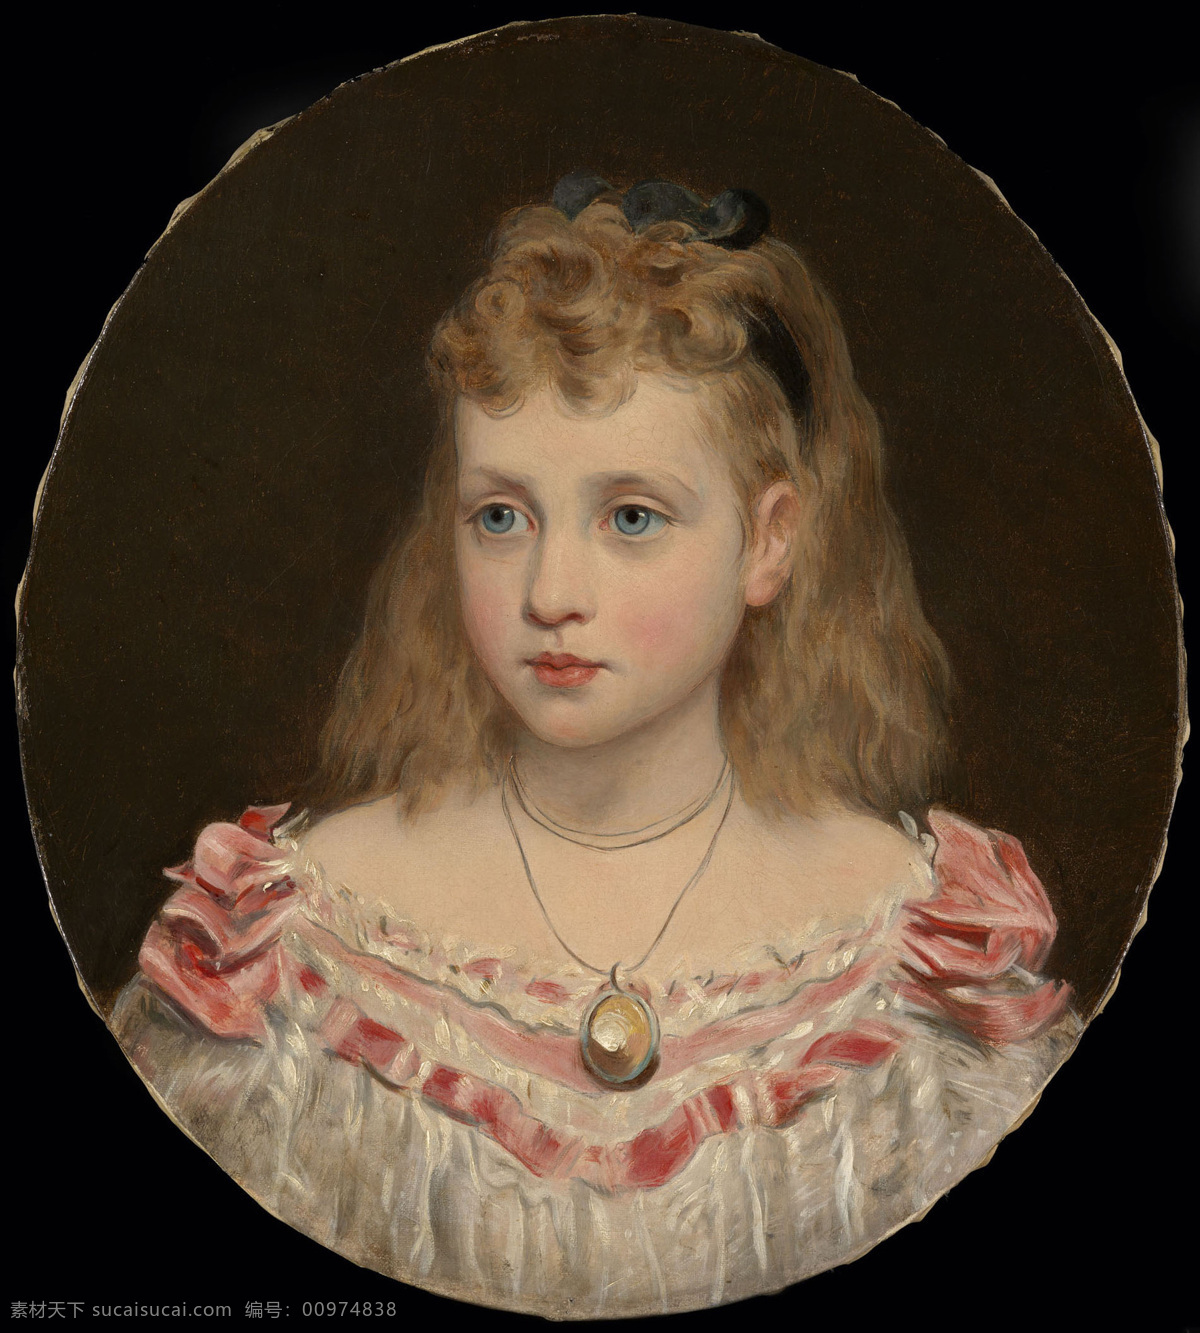 英国 公主 路 丝 斯 法夫公爵夫人 威尔士 亲王 爱德华 七 世 王妃 亚历山德拉 长女 威尔士公主 童年时光 19世纪油画 油画 绘画书法 文化艺术